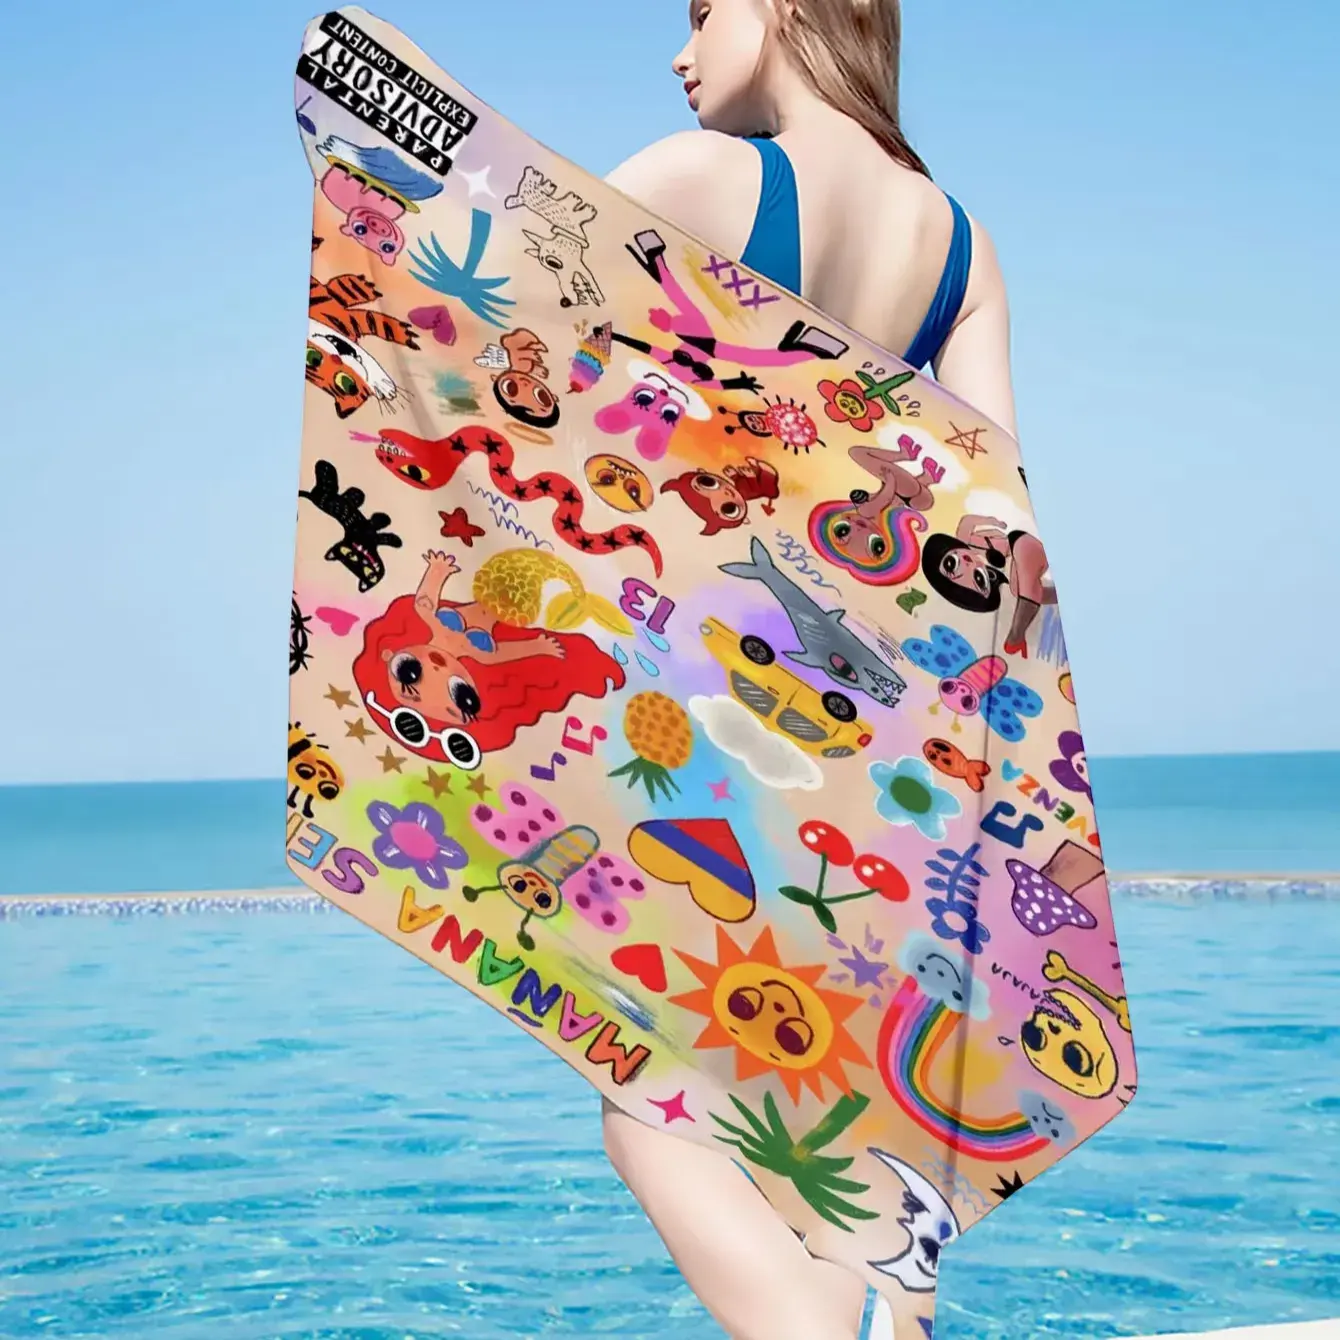 2023 özel yeni sıcak satmak tasarım moda Karol G battaniye Manana Sera Bonito hızlı kuru baskılı kum ücretsiz plaj havlusu